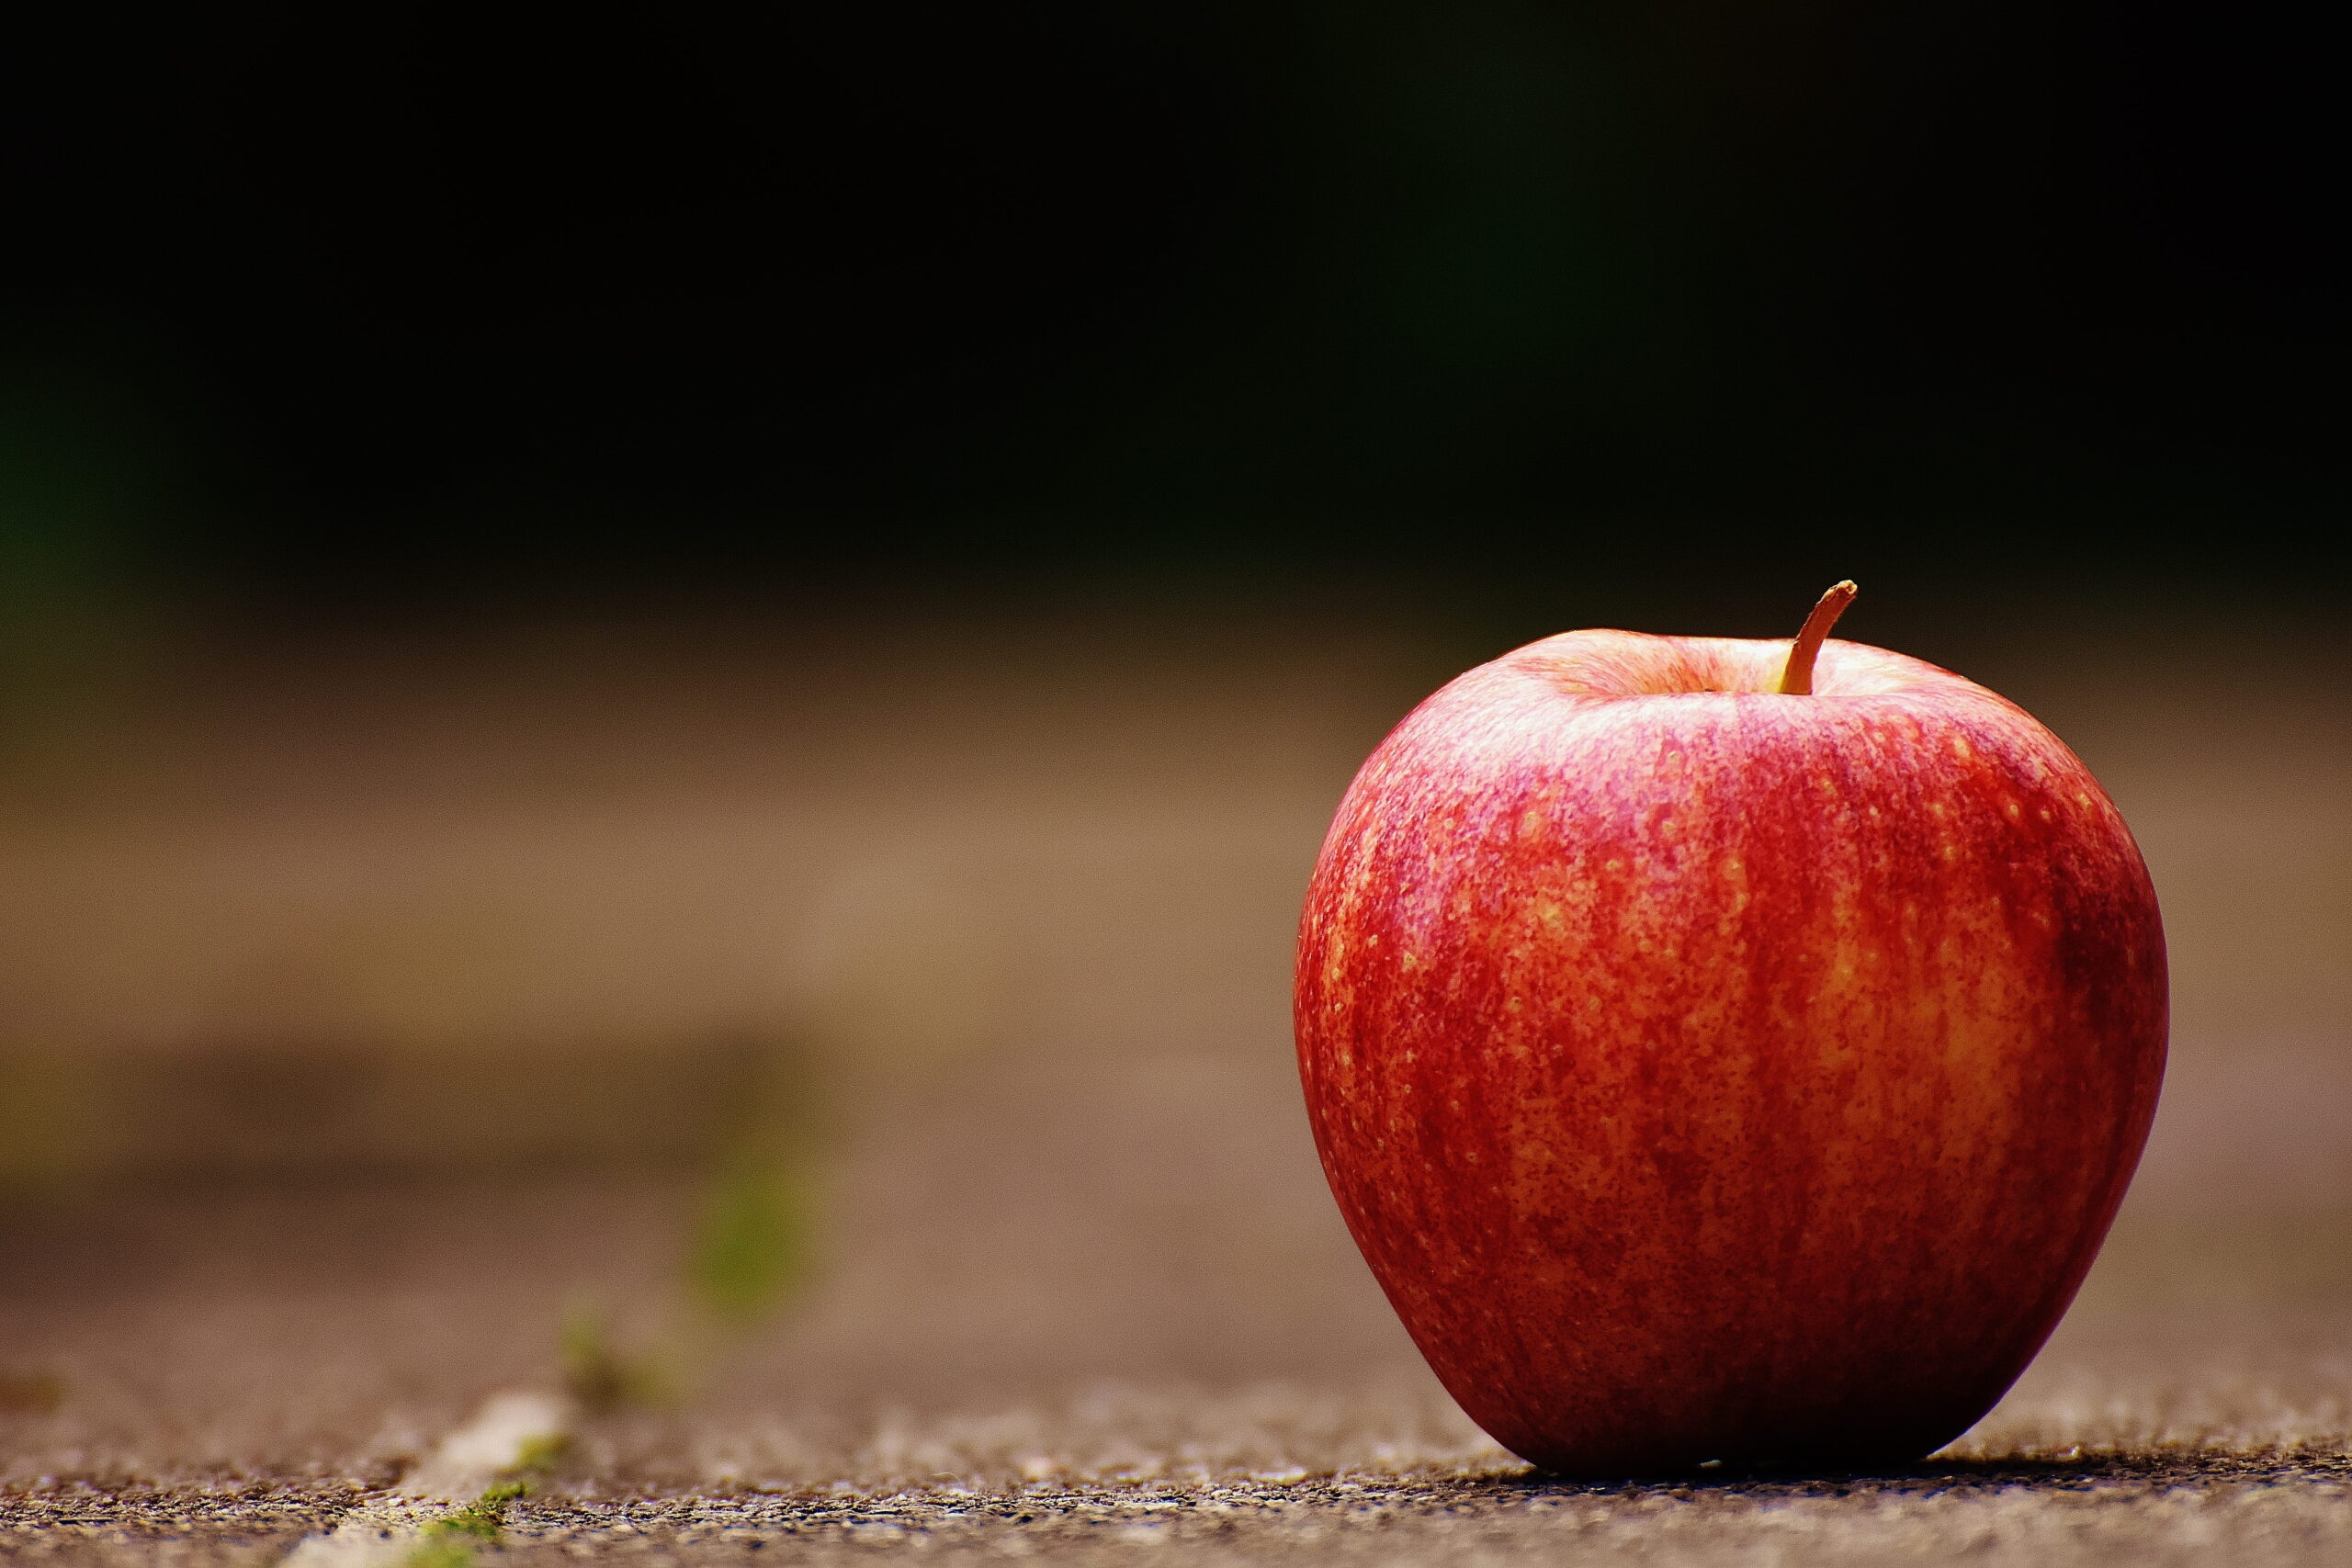 El consumo de manzanas españolas ayuda al medio ambiente y al bolsillo